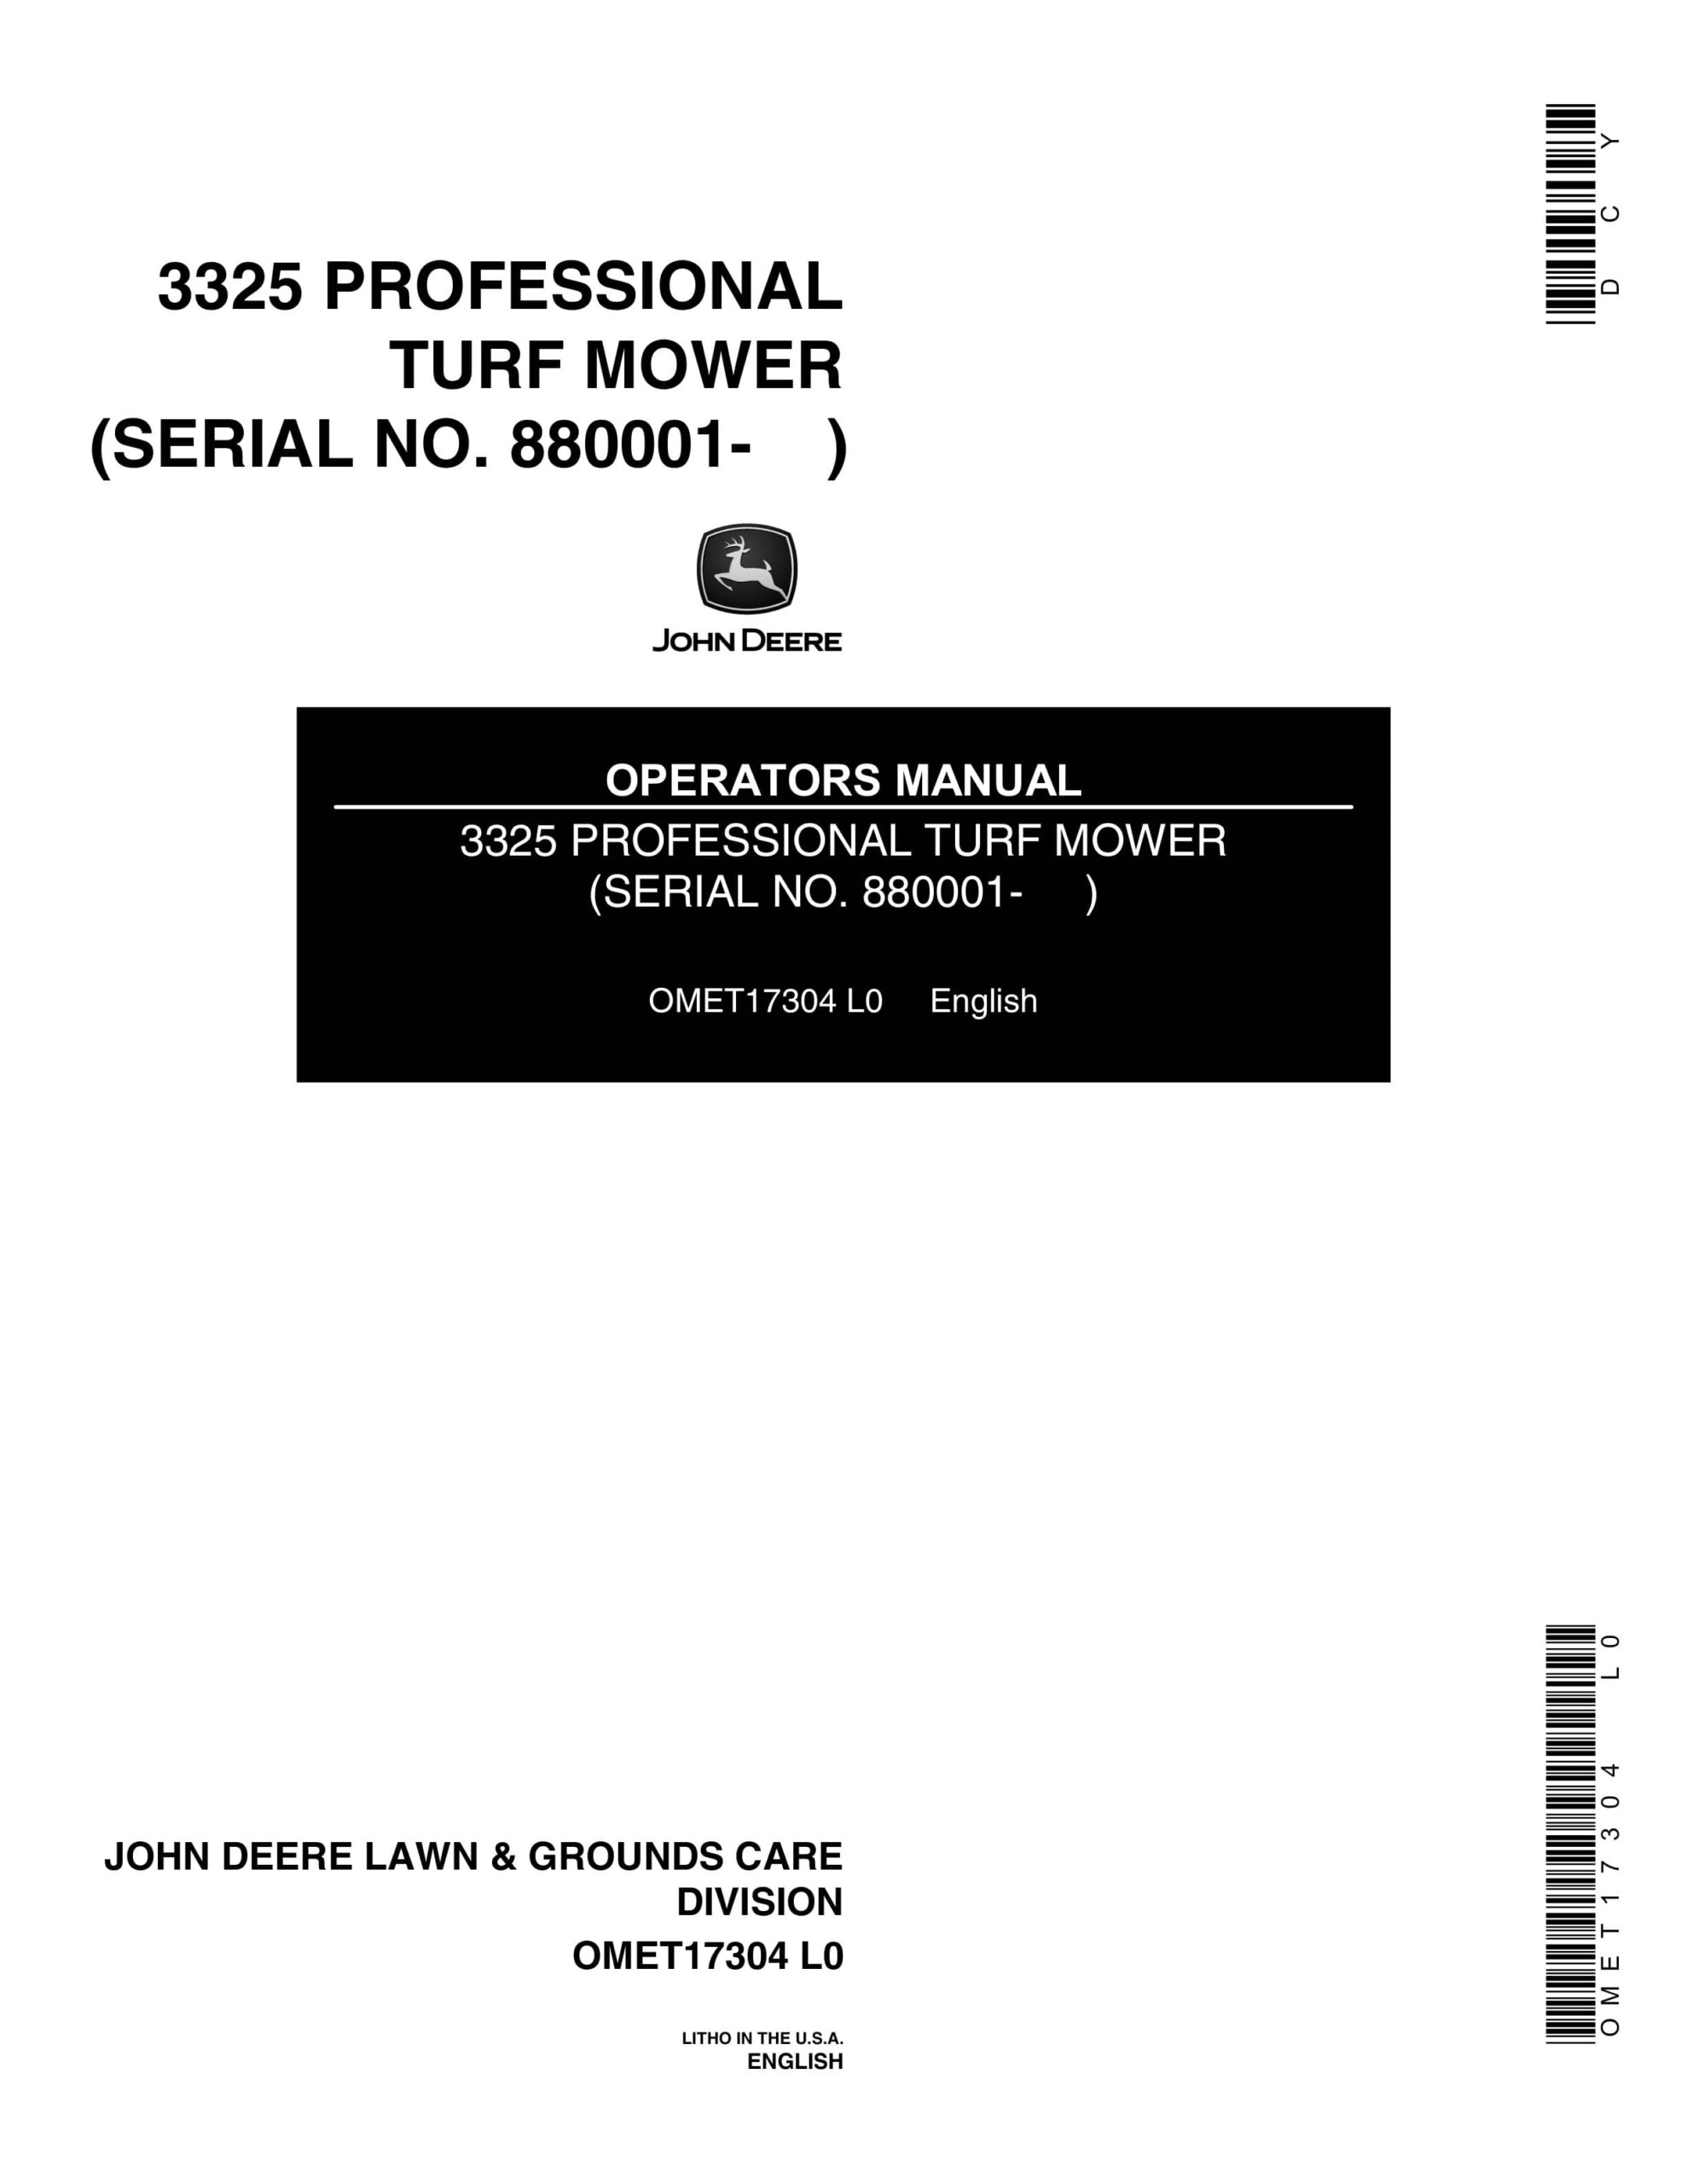 John Deere 3325 PROFESSIONAL TURF MOWER Operator Manual OMET17304-1